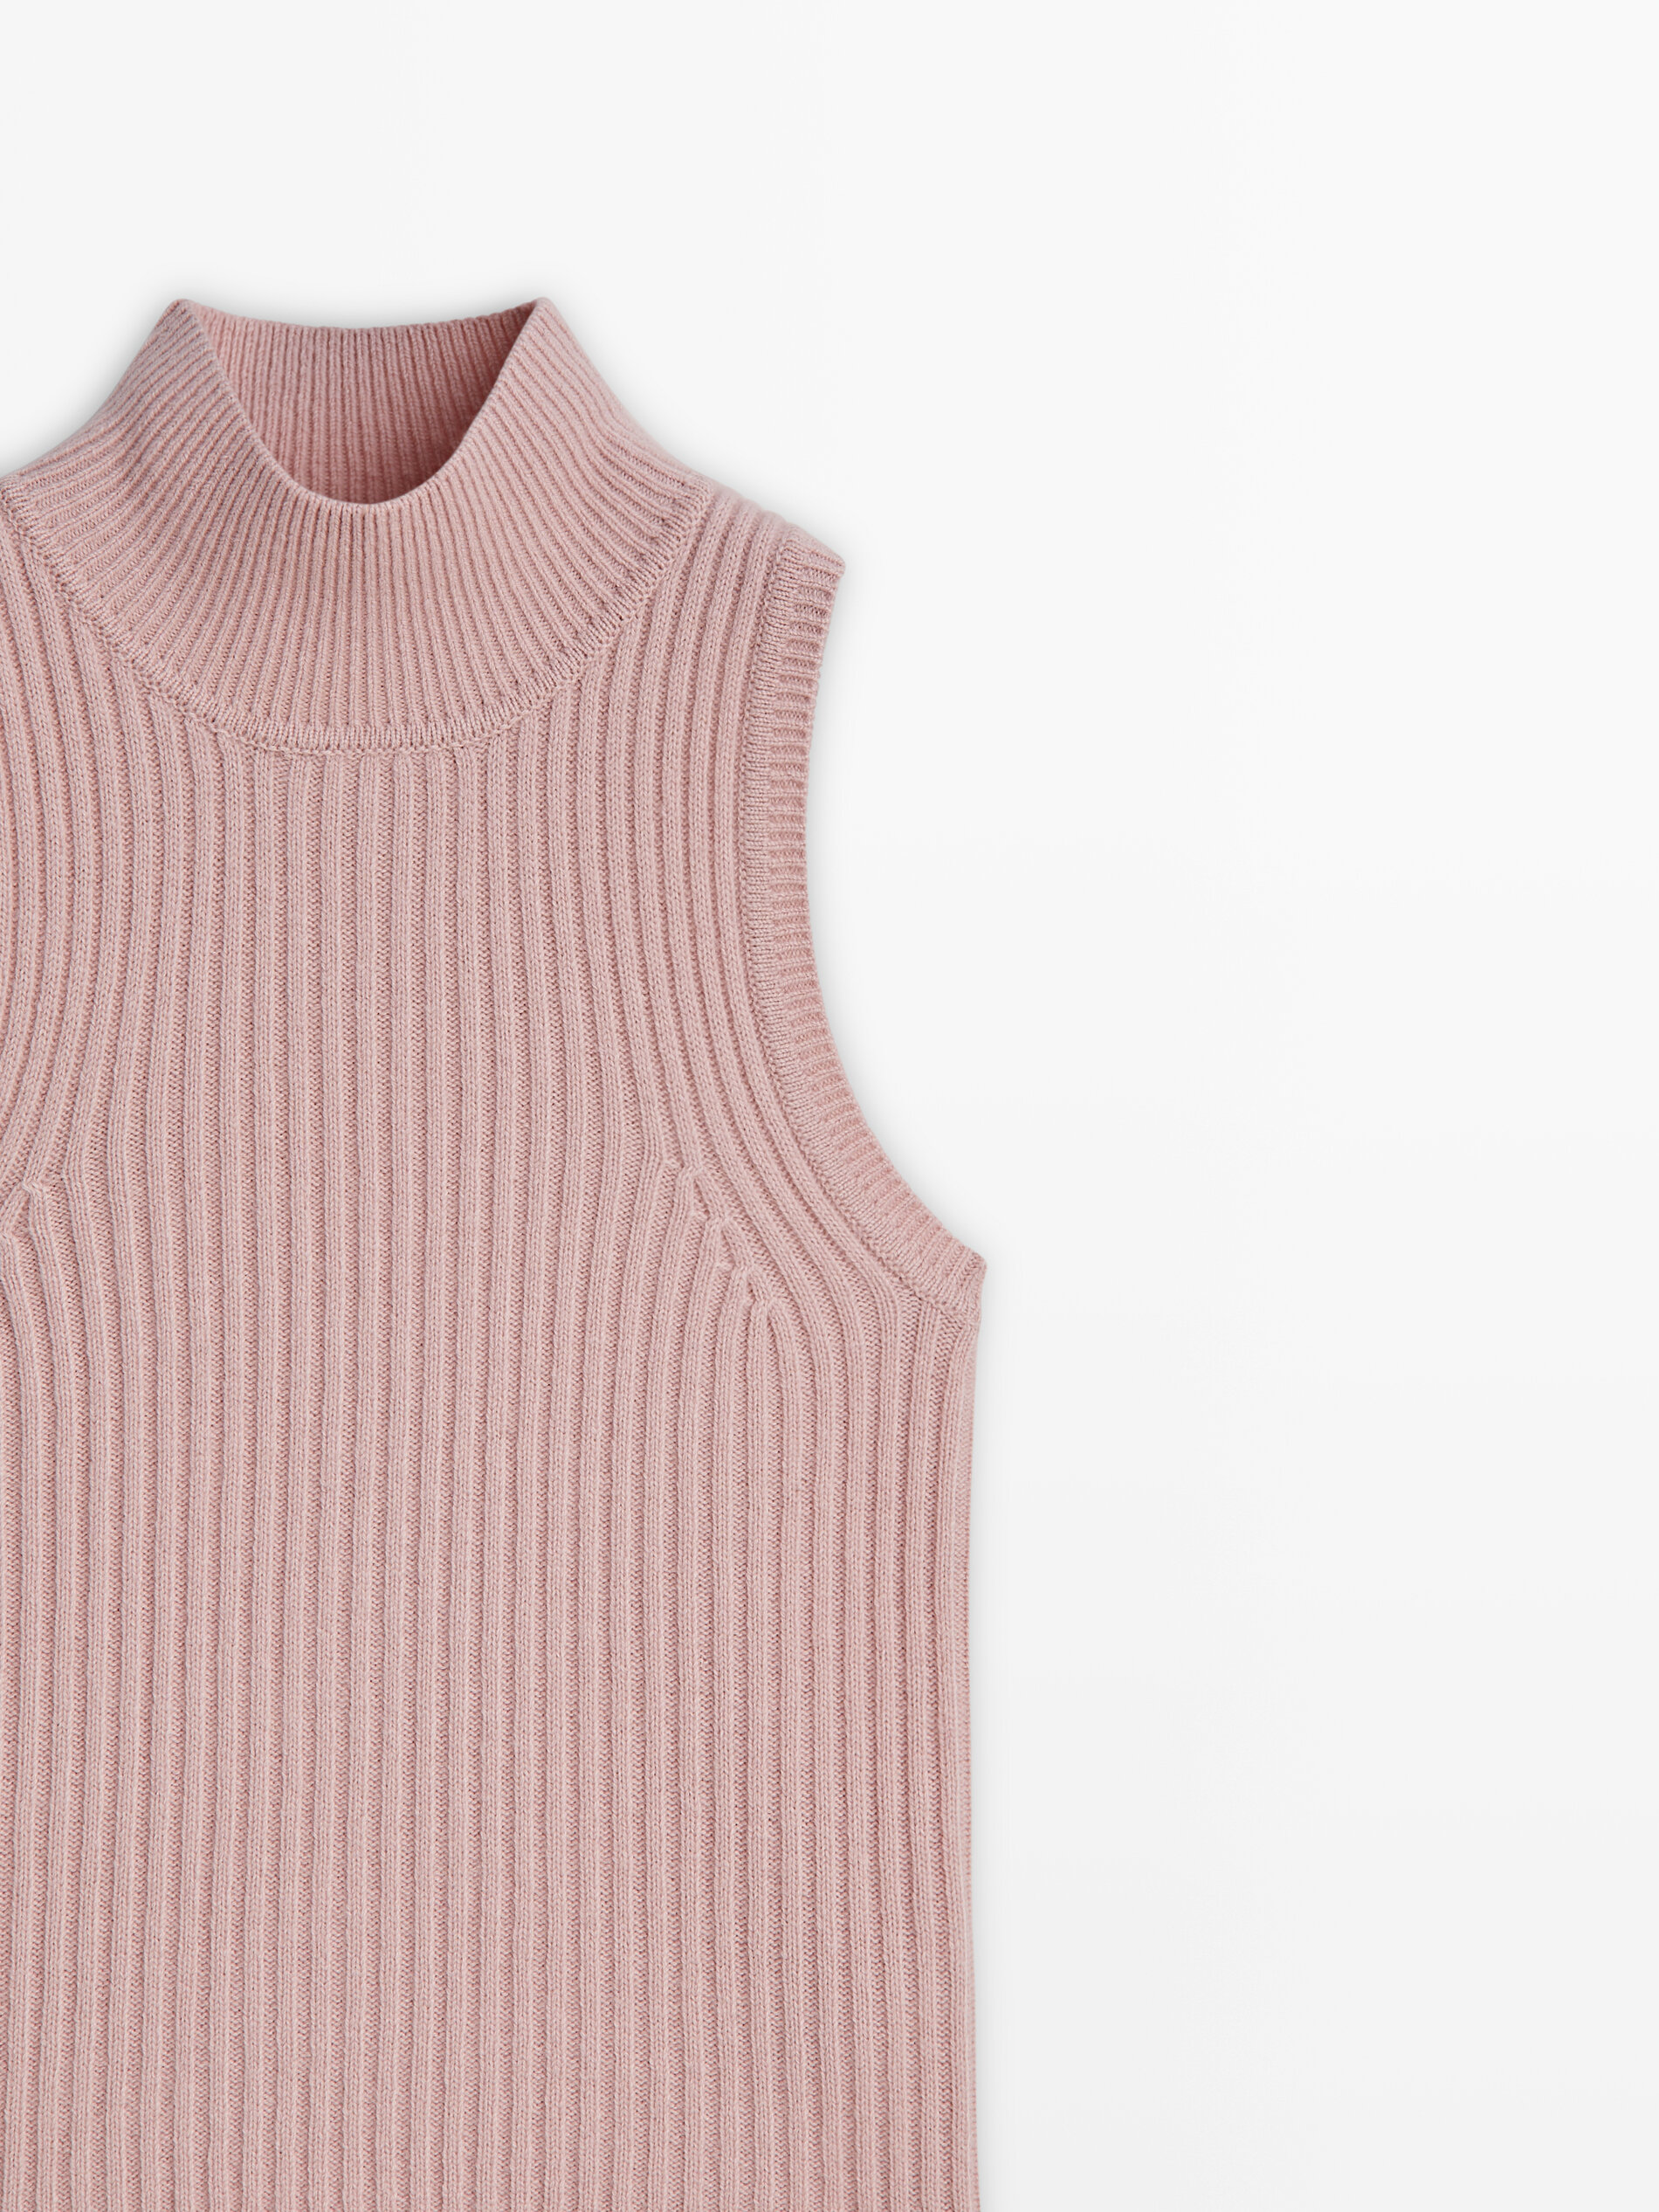 Wool blend ribbed knit top - Studio · Rose Pink, Bluish Green 